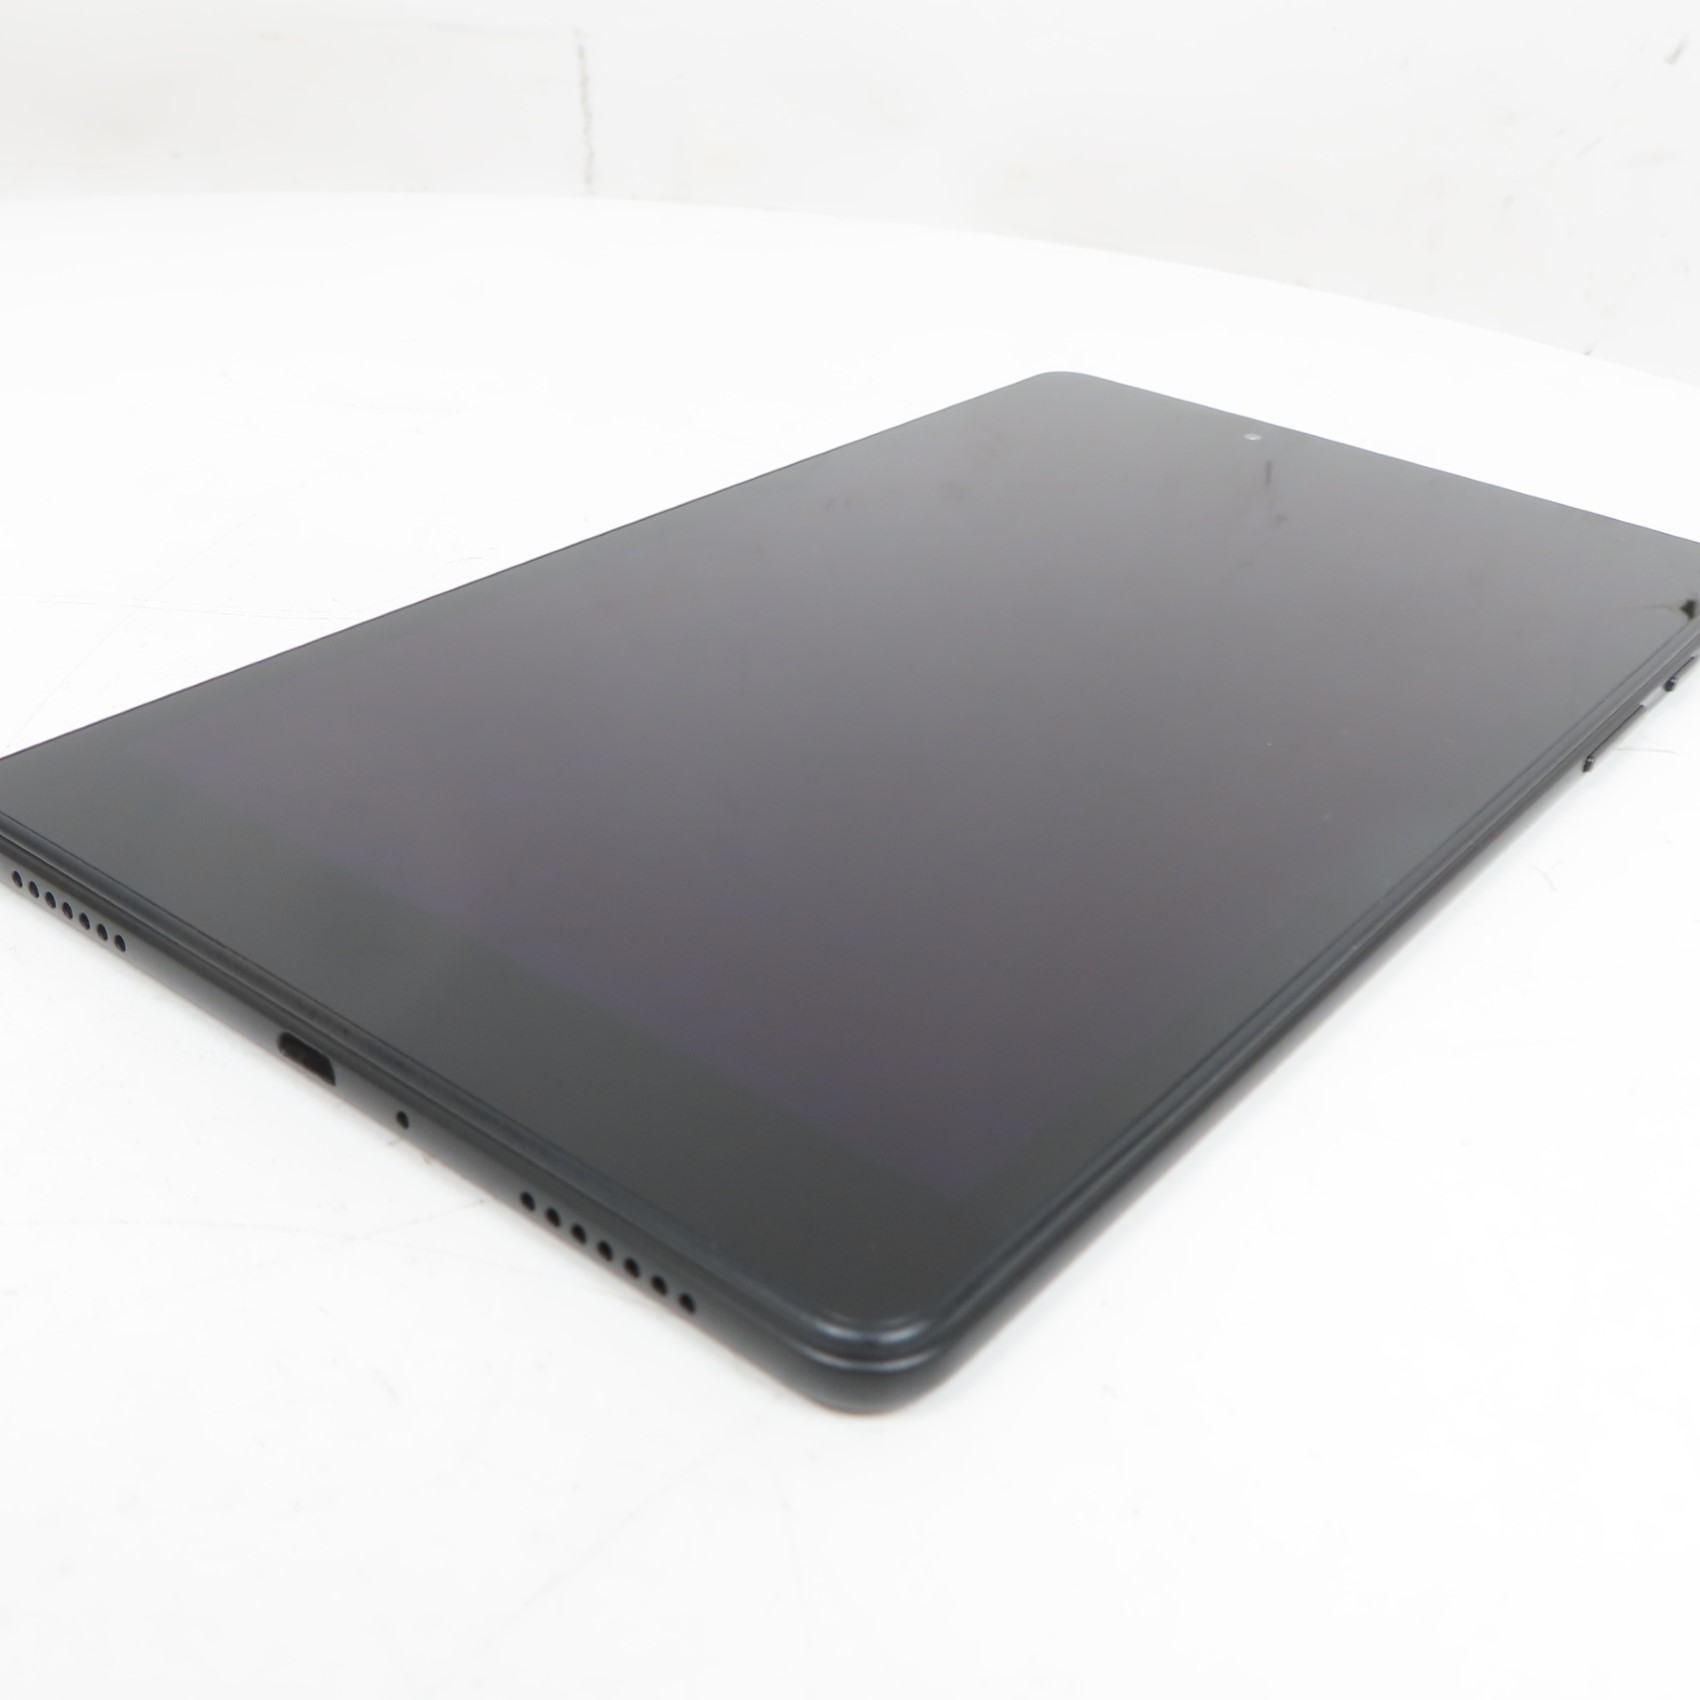 Samsung Galaxy Tab A 10.1 32 GB Wifi Tablet Black (2019)